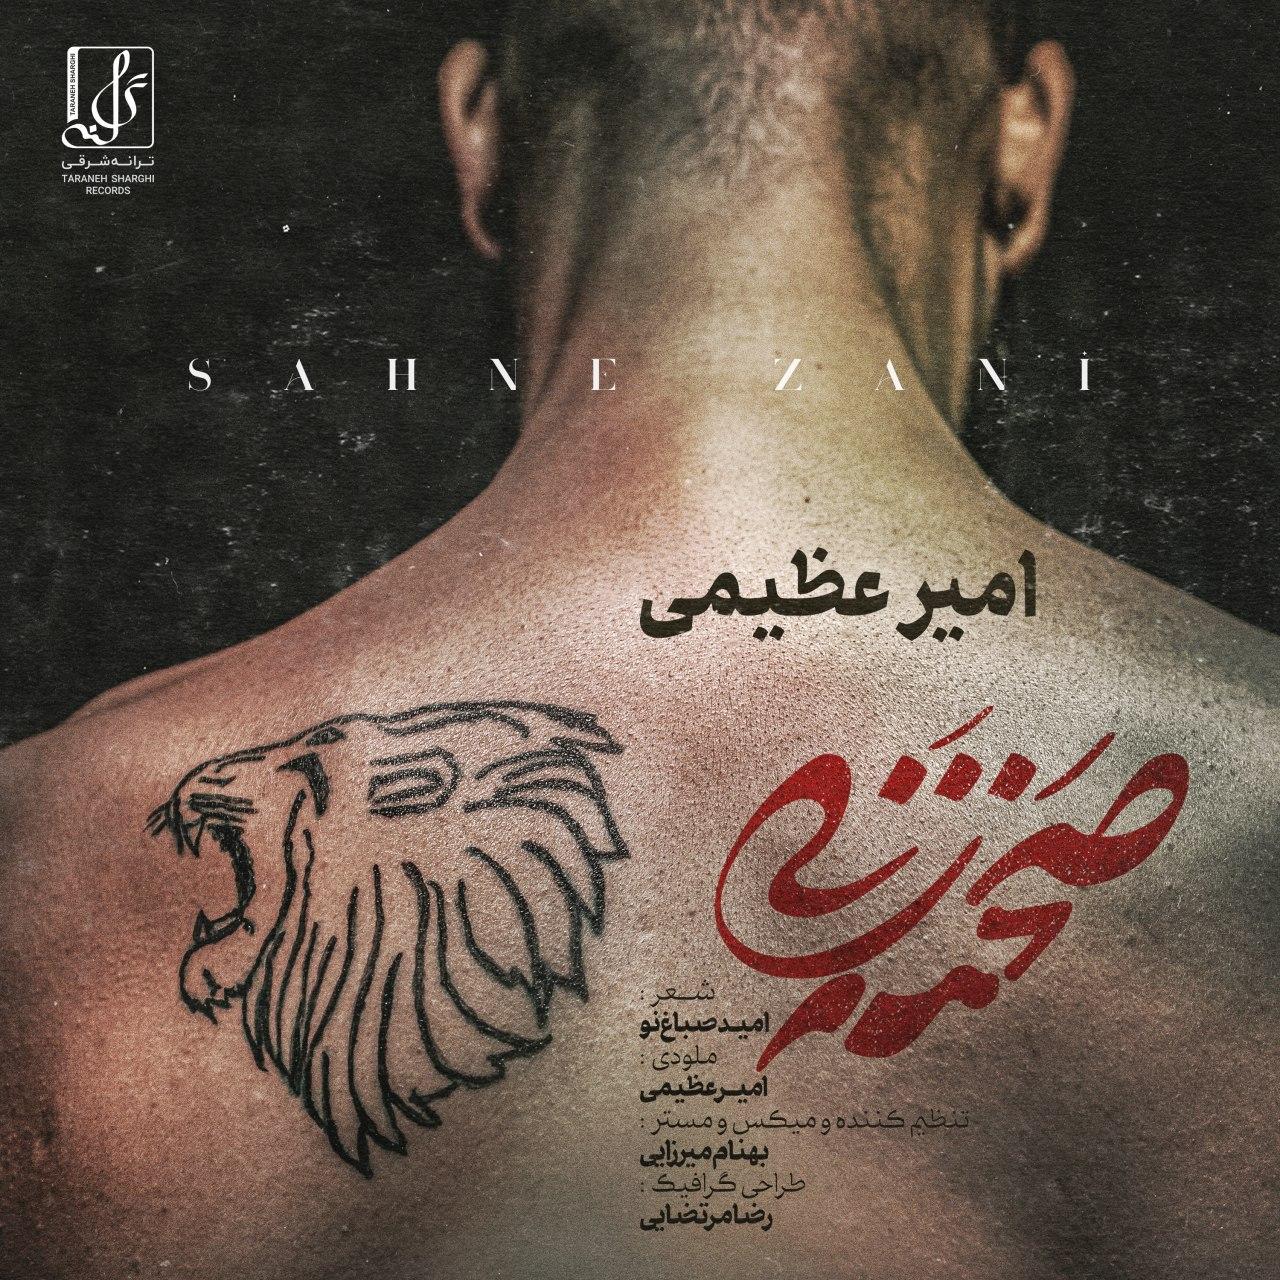  دانلود آهنگ جدید امیر عظیمی - صحنه زنی | Download New Music By Amir Azimi - Sahne Zani